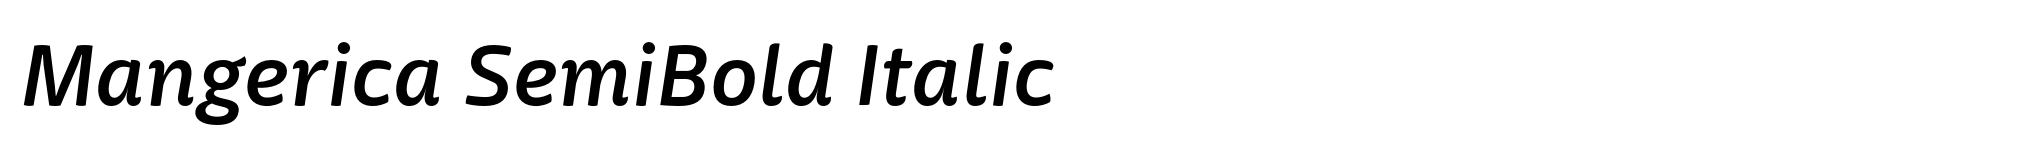 Mangerica SemiBold Italic image